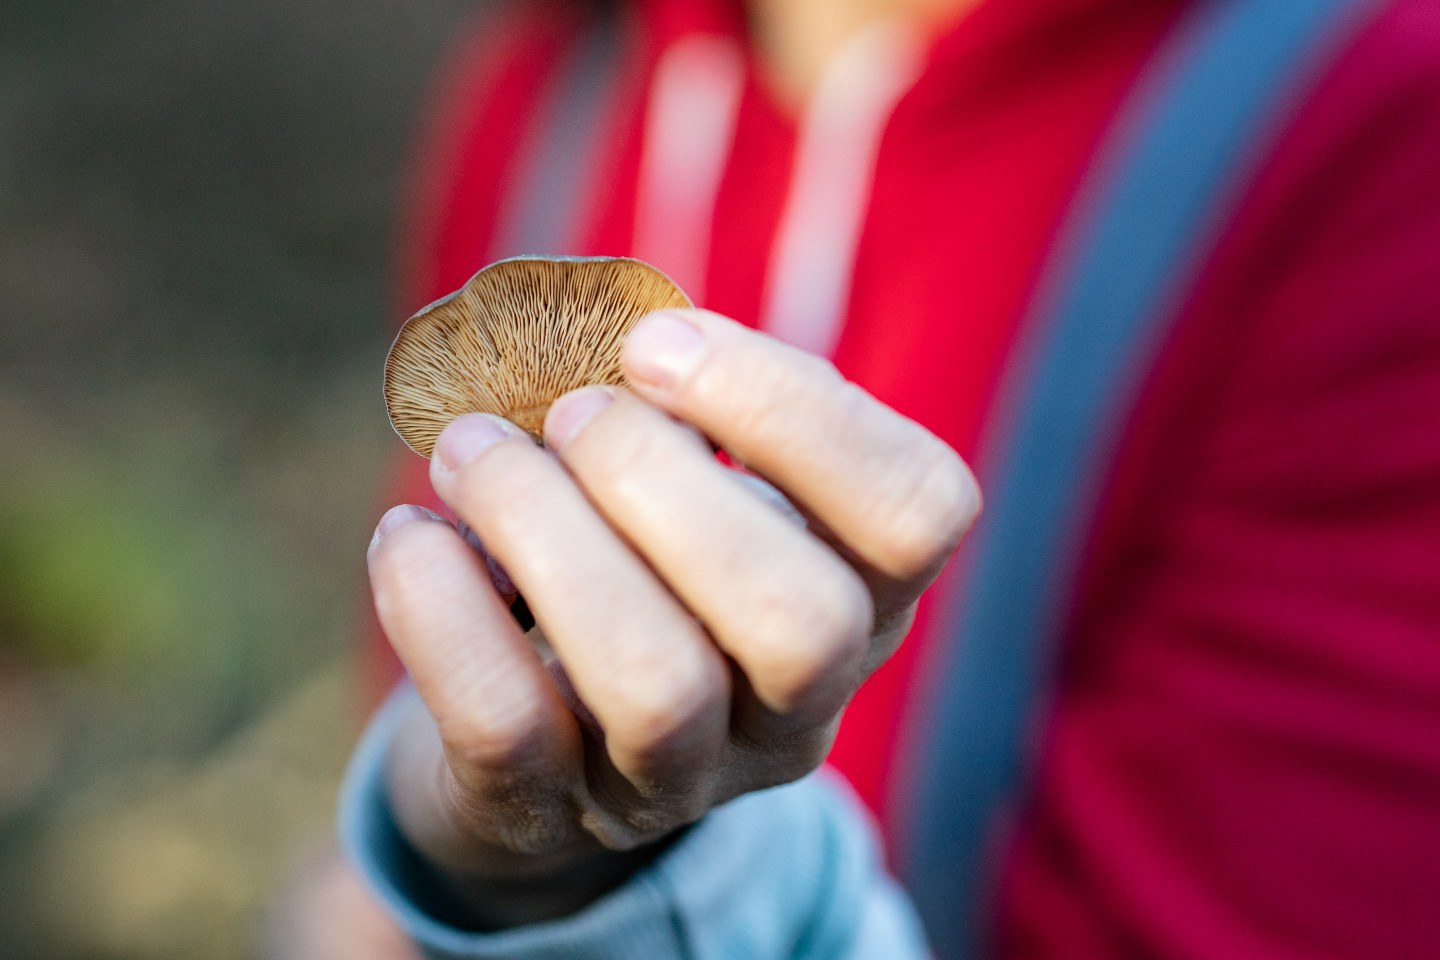 A hand holds a mushroom.